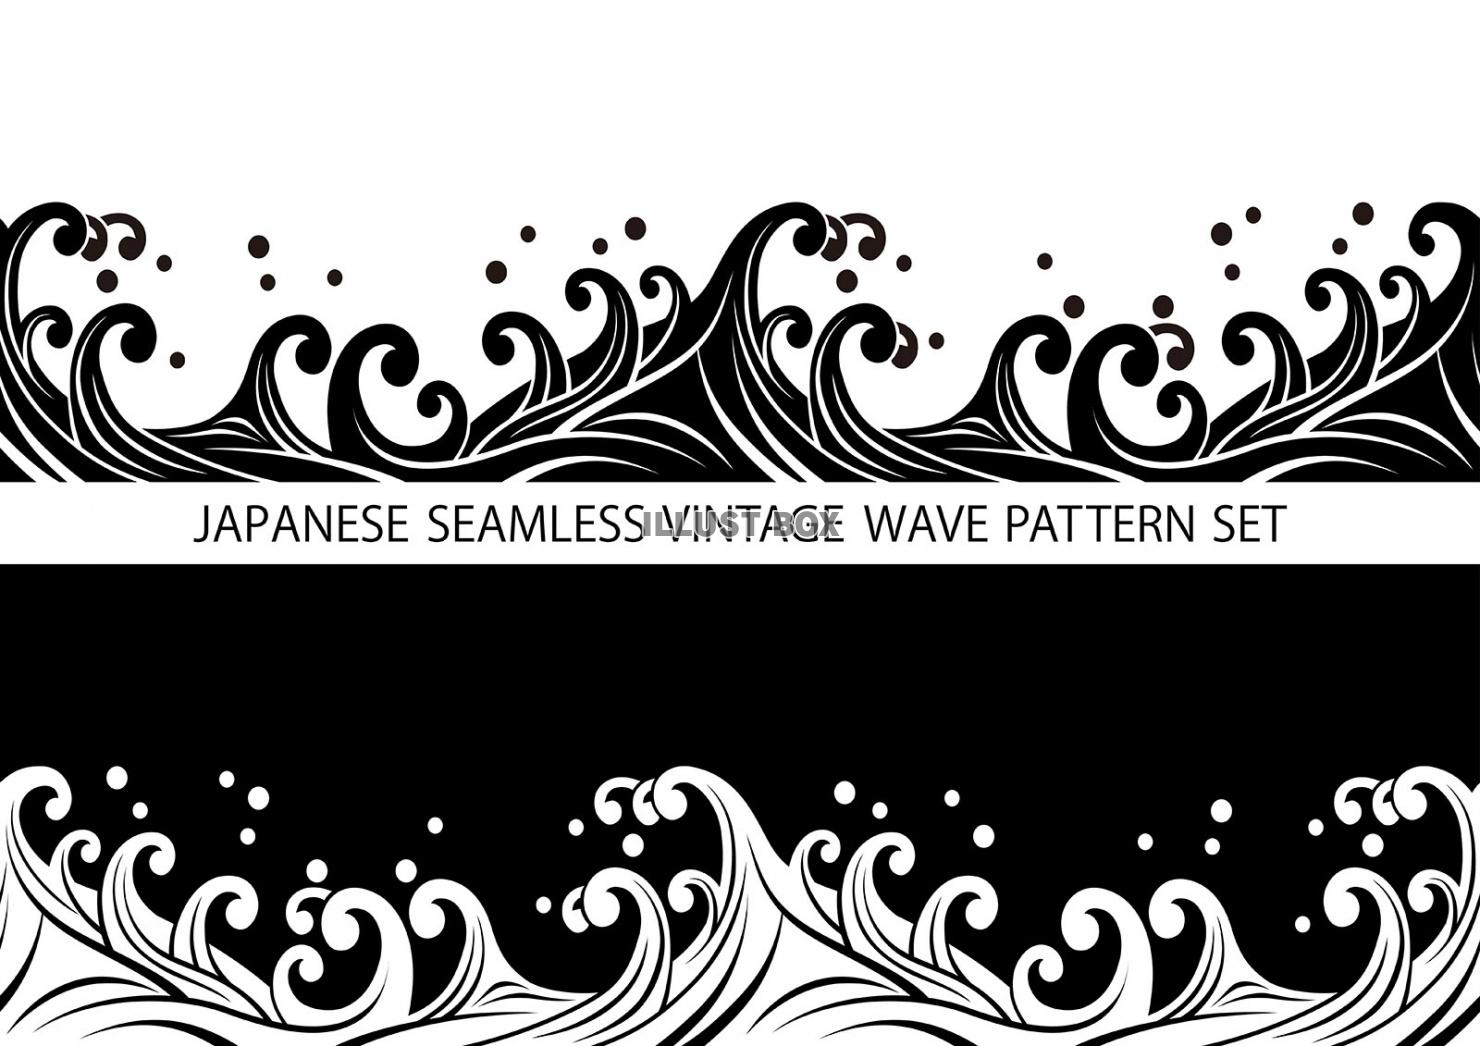 テキストスペース付きシームレスな波の和柄背景セット